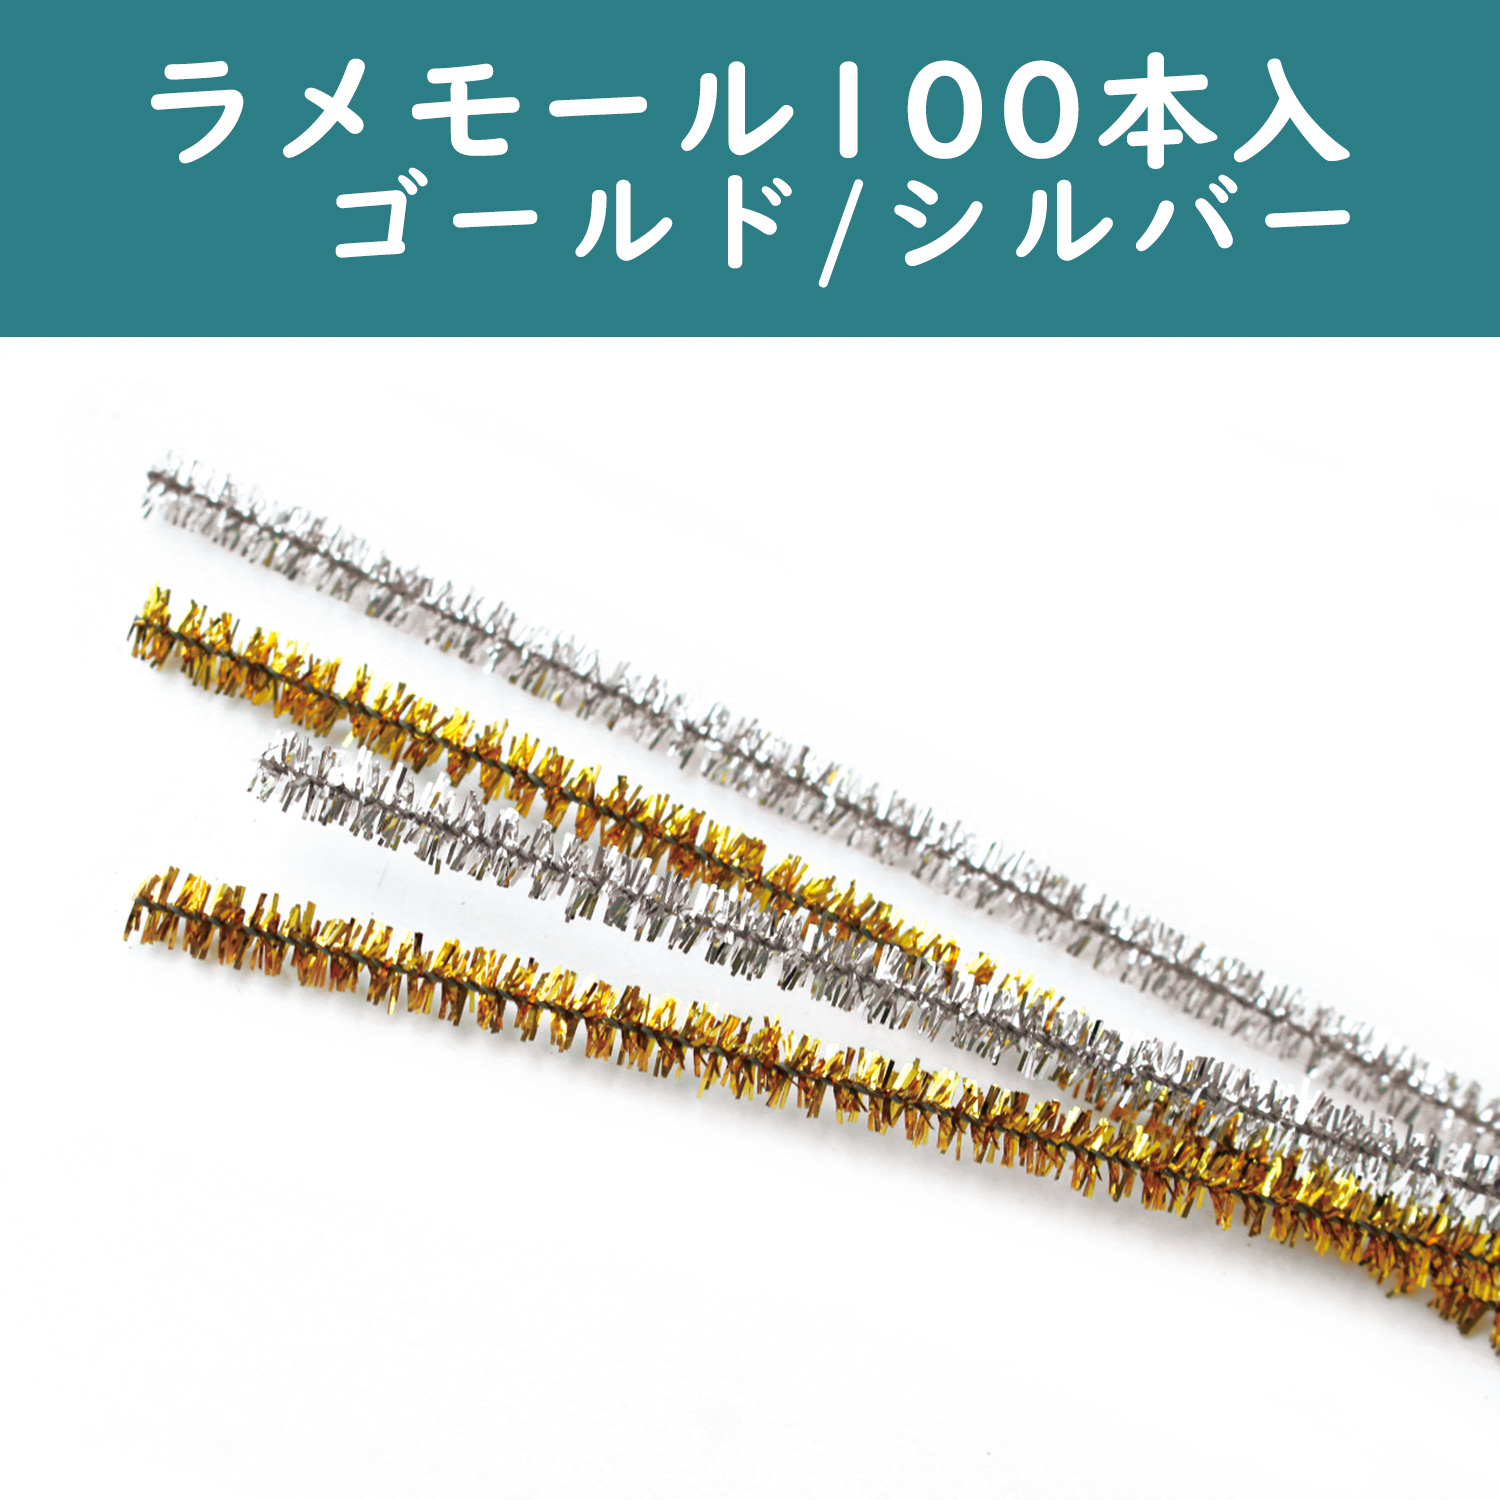 【10周年】CN437-100 ラメモール 100本入 (袋)